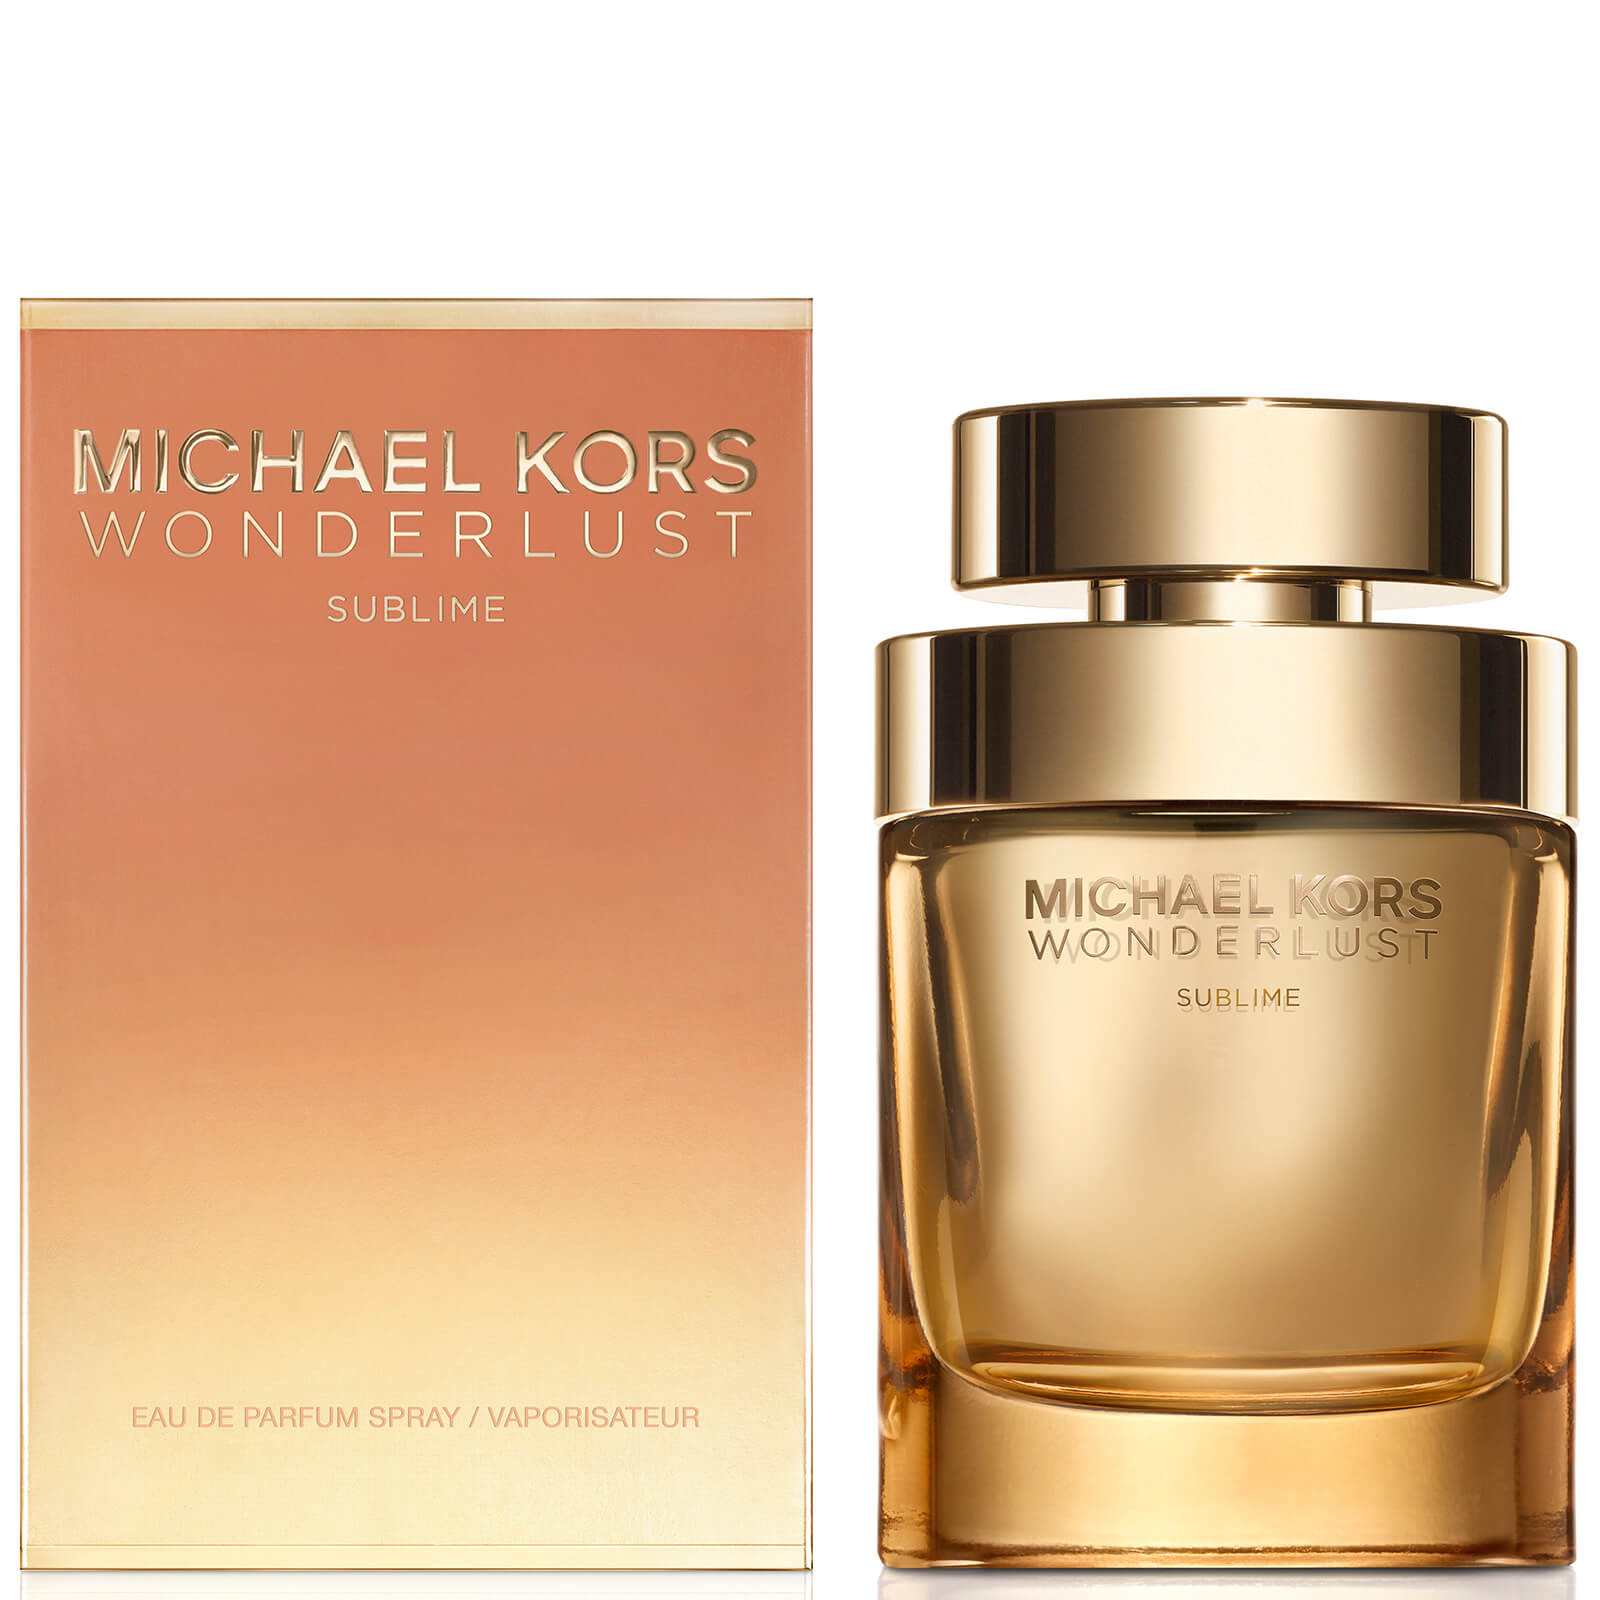 Michael Kors Wonderlust Sublime Eau de Parfum (Various Sizes)